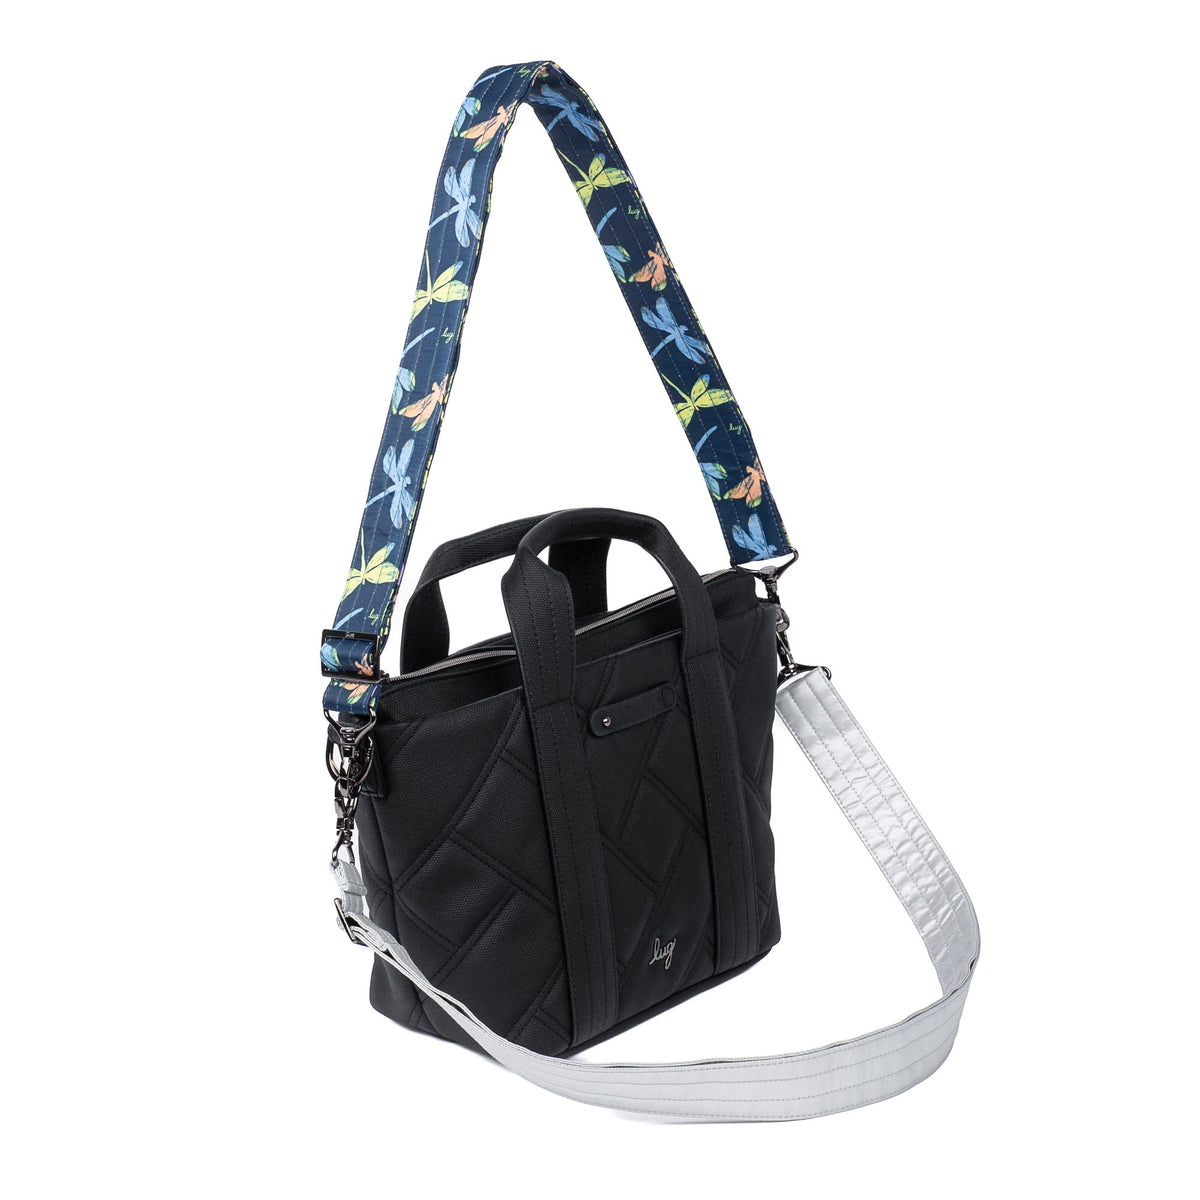 Adjustable 2pc Bag Straps - 1.5&quot;